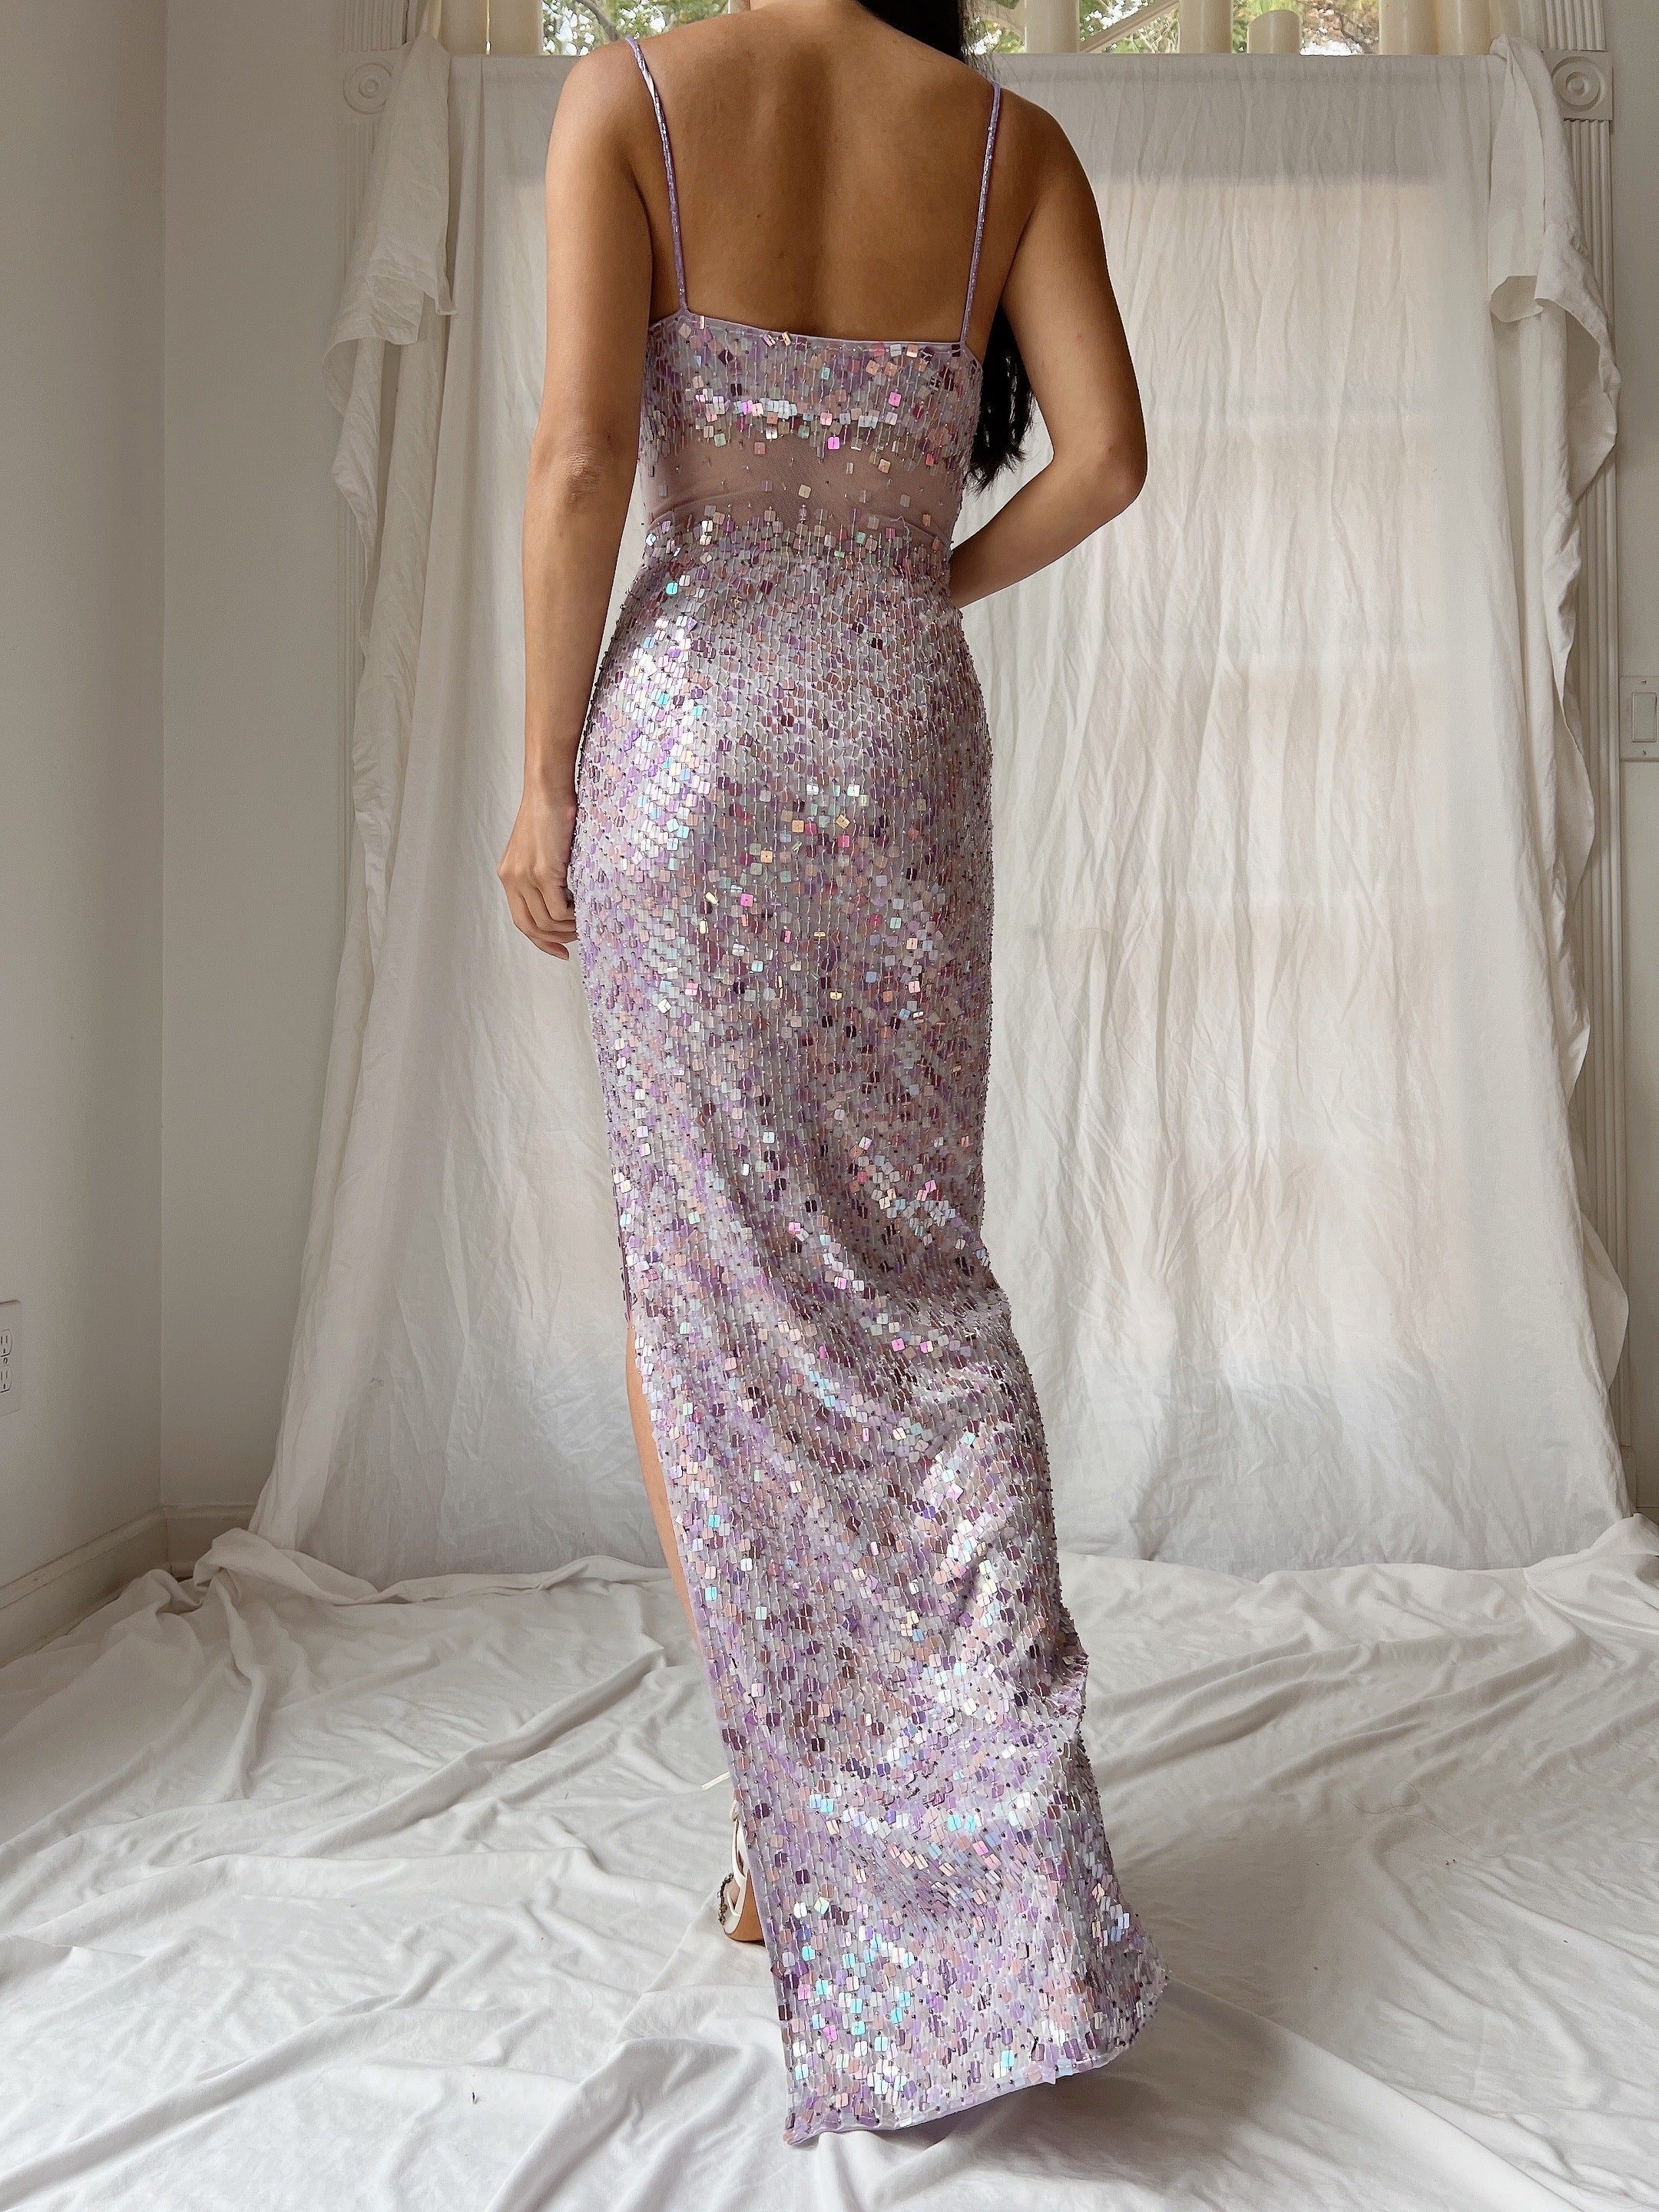 Vintage Lavender Sequins Dress - S